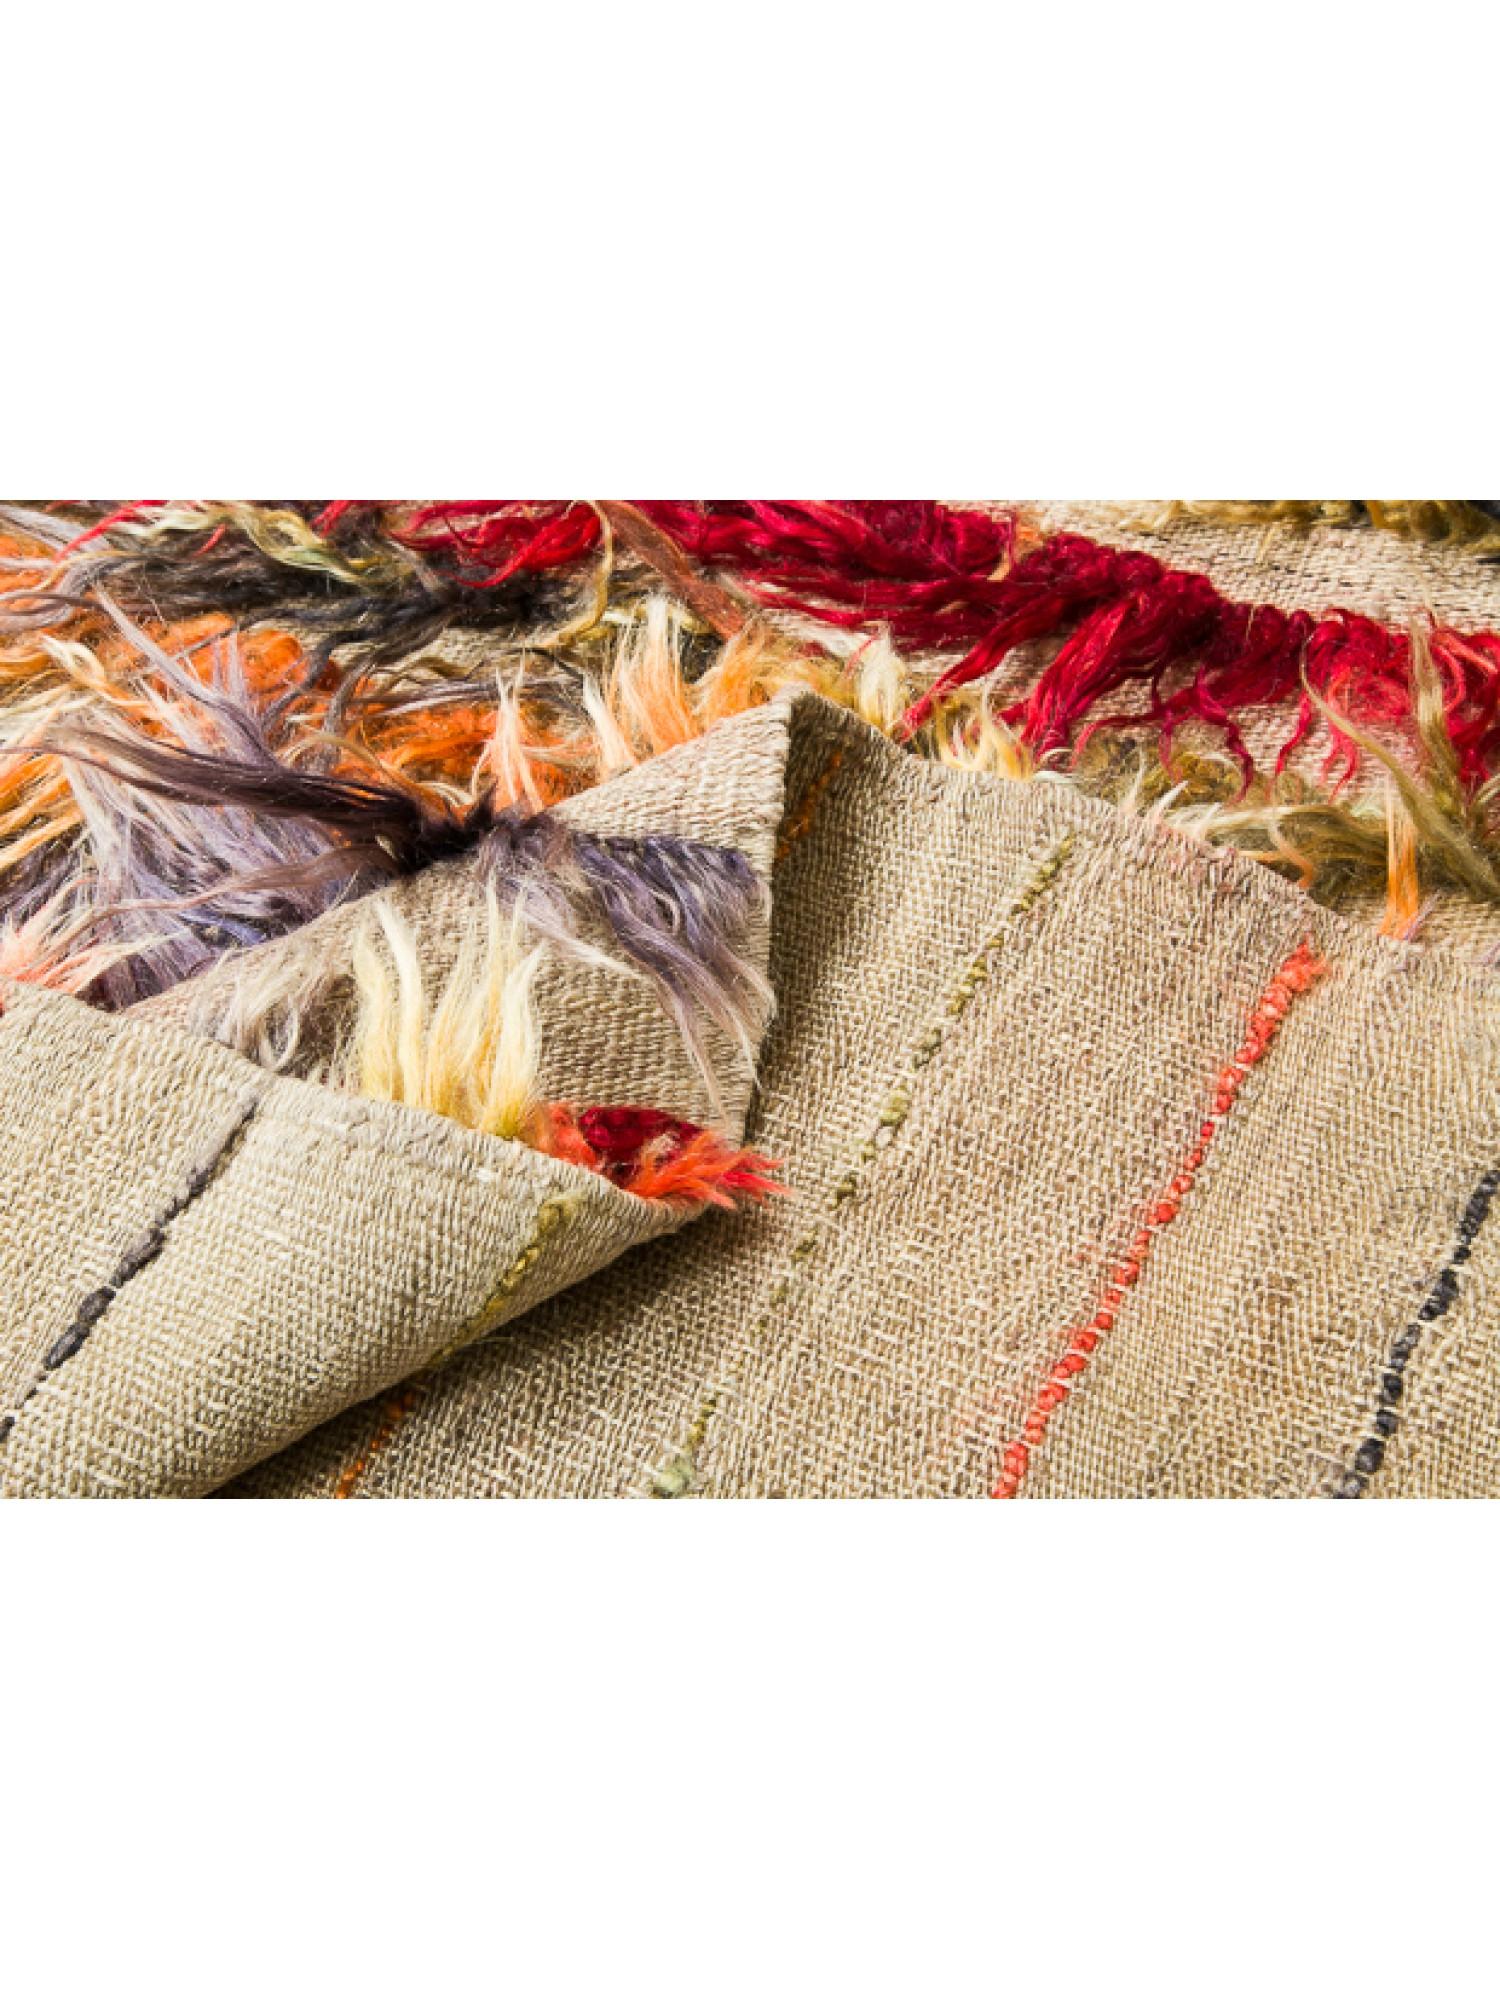 Dies ist ein Vintage-Tulu-Teppich aus Zentralanatolien, der Region Konya, mit zotteligem, langem Wollhaar, gutem Zustand und schöner Farbkomposition.

Zentralanatolische Tulu-Teppiche, auch bekannt als Tulu-Teppiche oder Tulu-Kilims, sind